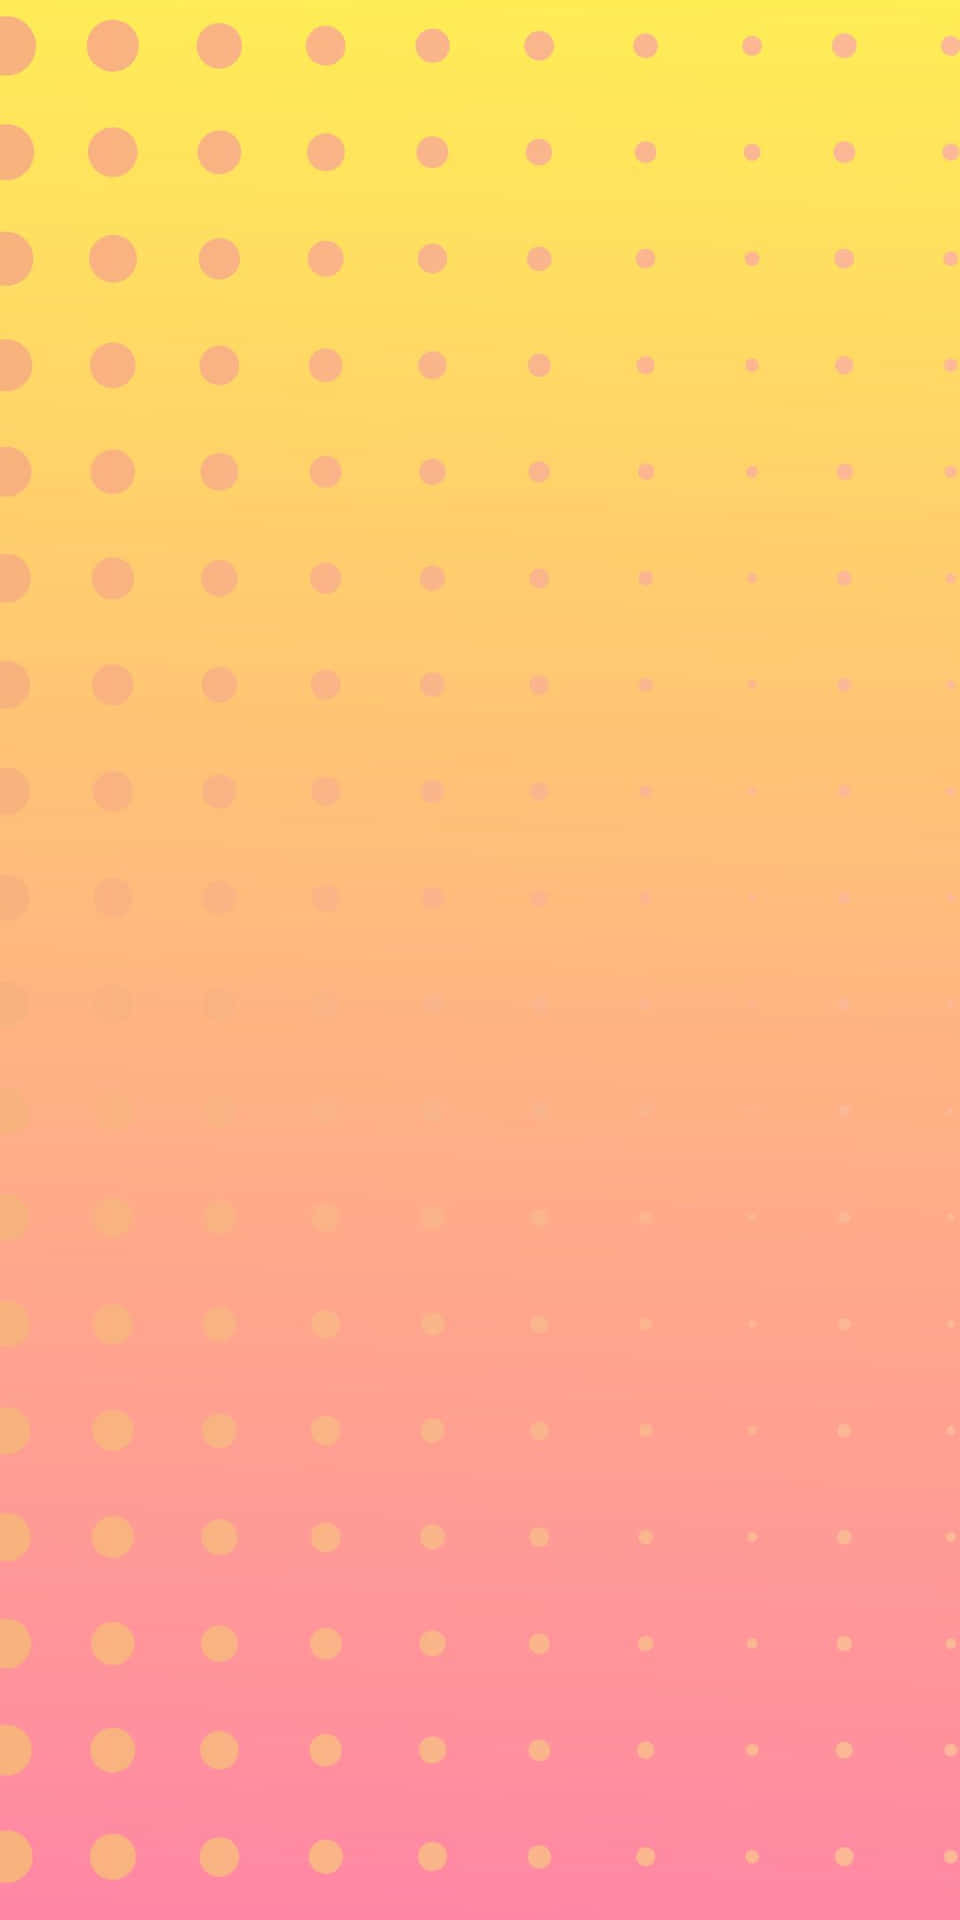 Fondode Pantalla De Pixel 3 Con Puntos Semitonos En Degradado De Rosa Y Amarillo.